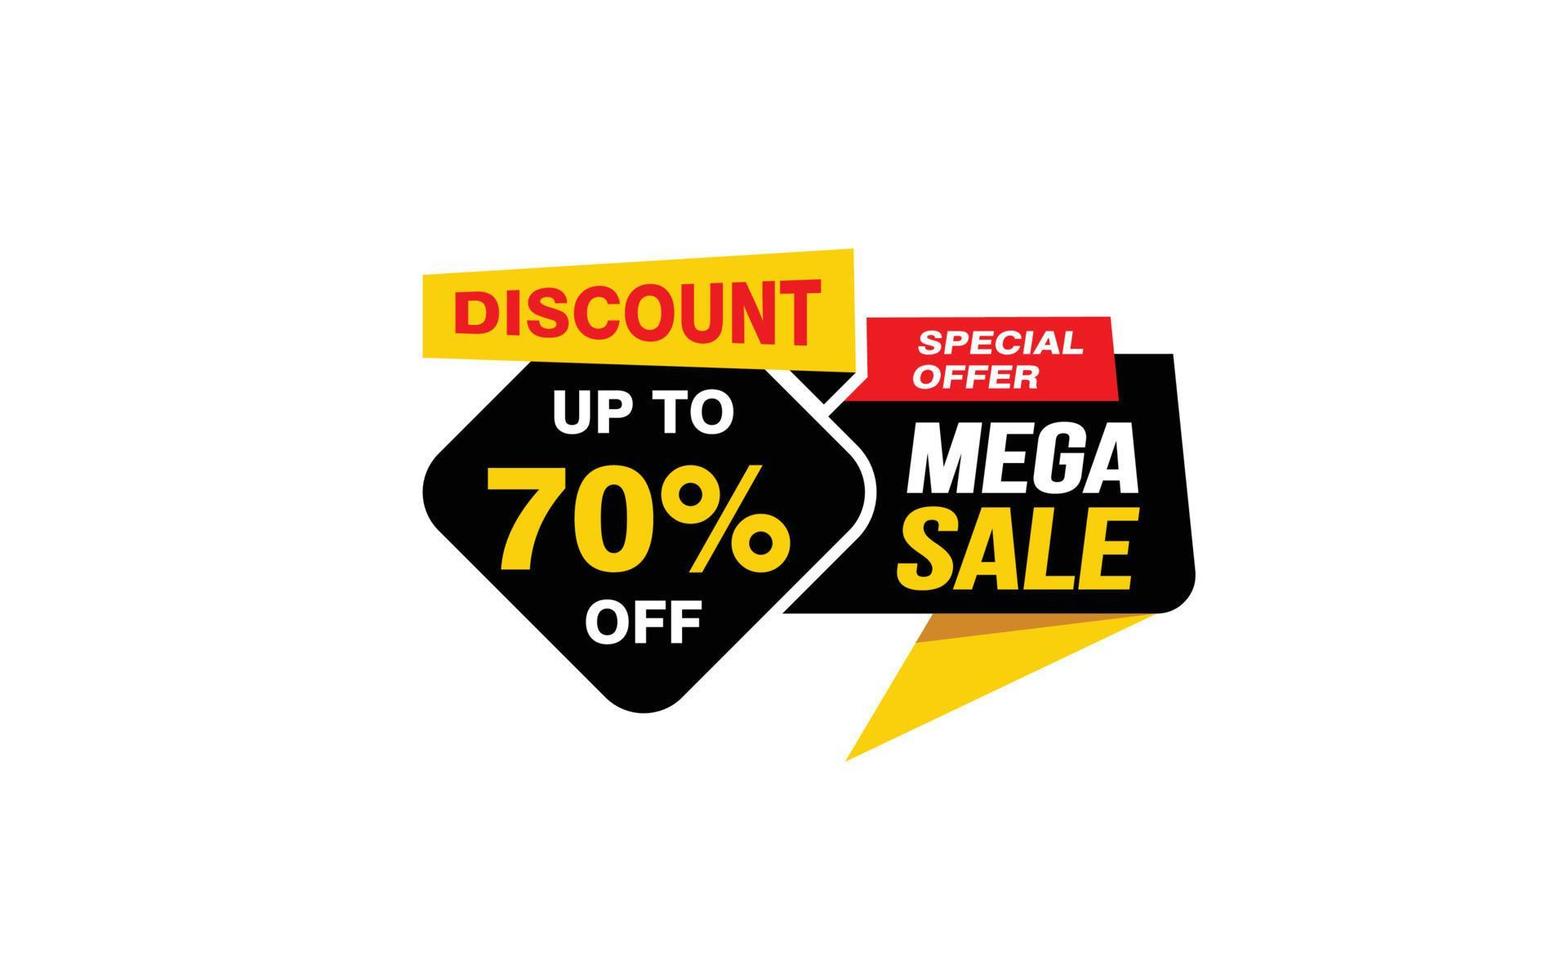 Oferta de mega venta del 70 por ciento, liquidación, diseño de banner de promoción con estilo de etiqueta. vector